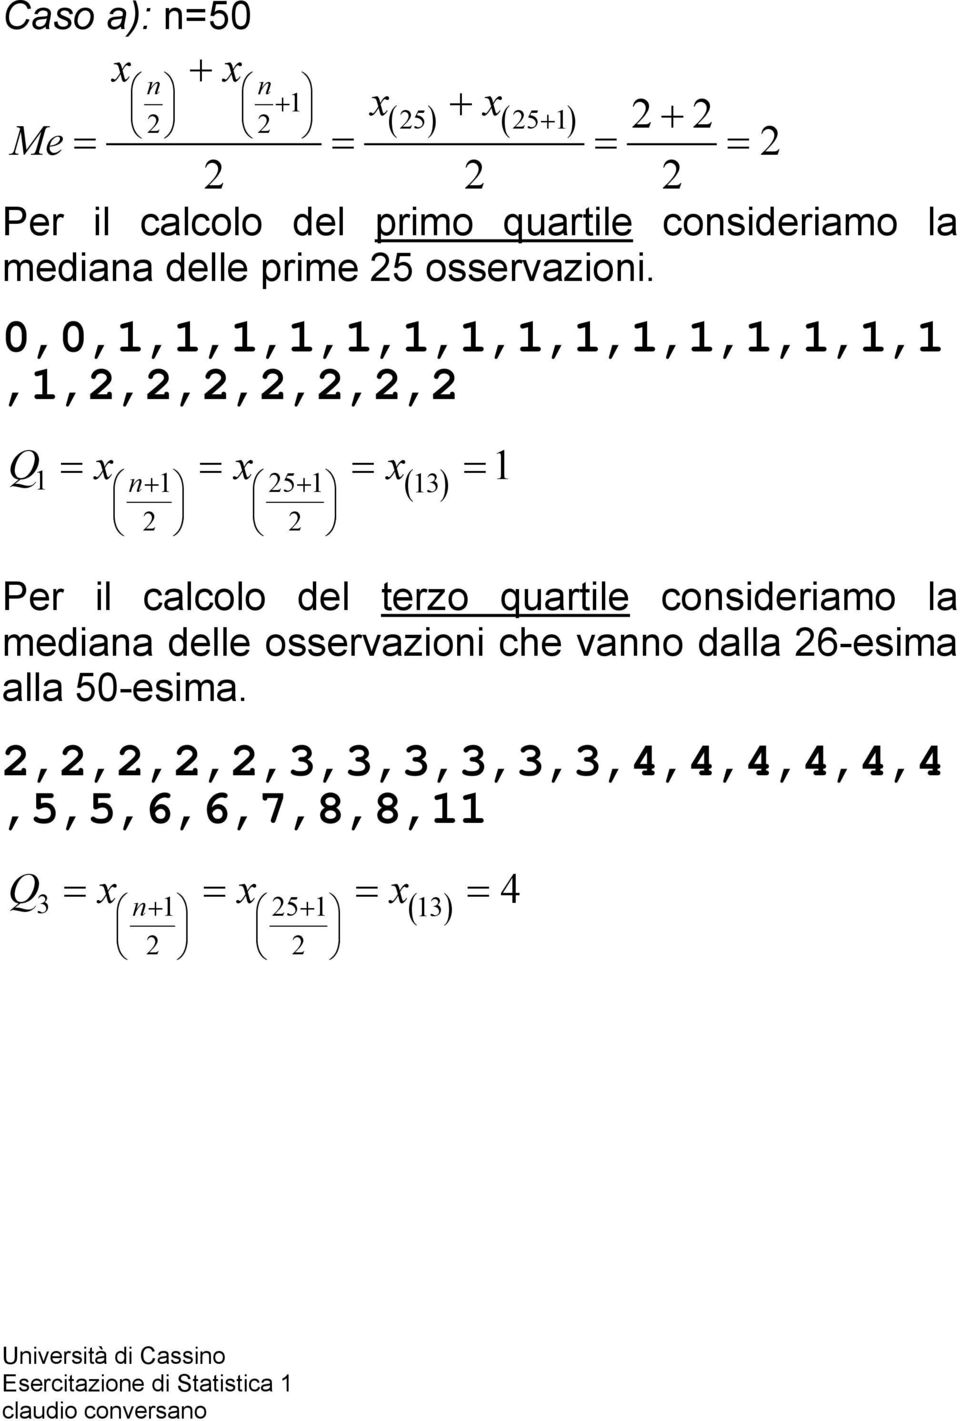 0,0,1,1,1,1,1,1,1,1,1,1,1,1,1,1,1,1,2,2,2,2,2,2,2 Q = x = x = x = 1 1 n+ 1 25+ 1 13 2 2 Per il calcolo del terzo